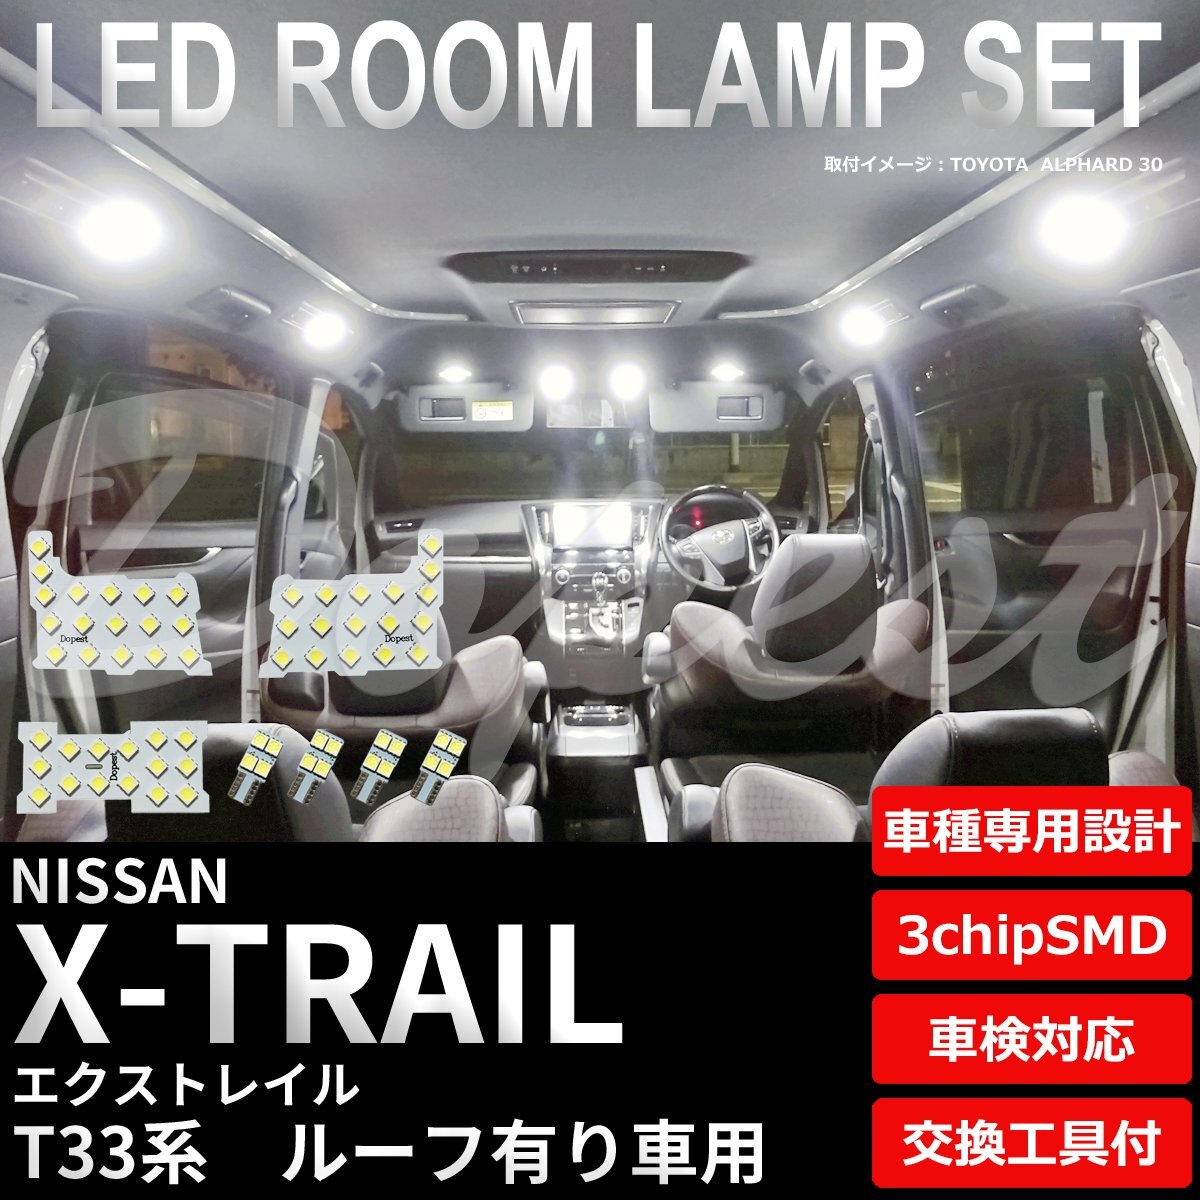 Dopest 日産 エクストレイル LED ルームランプ セット T33系 ルーフ有り X-TRAIL e-power ライト 球 3chipSMD 室内灯 ホワイト/白の画像1